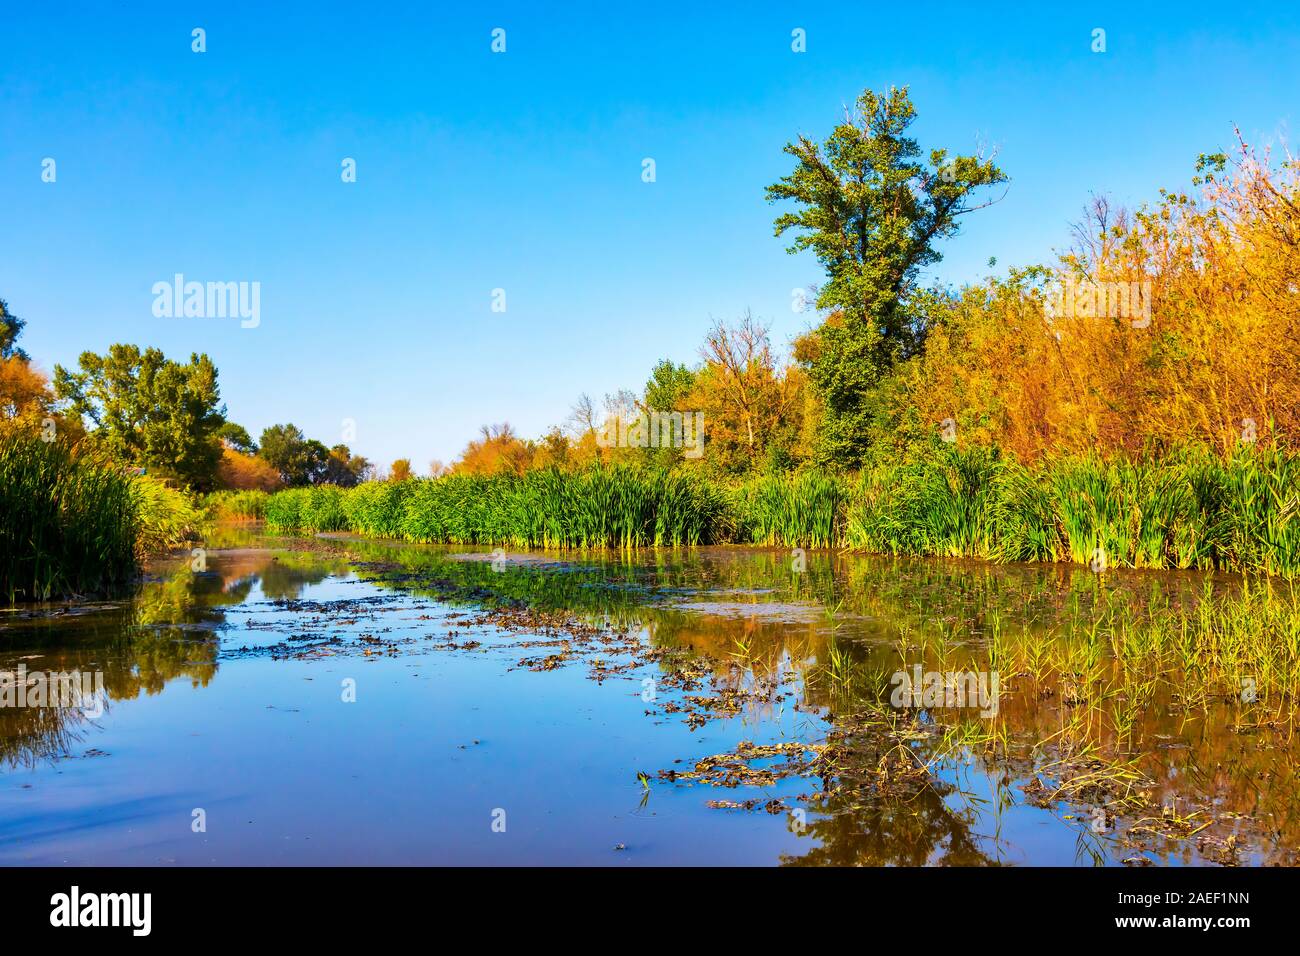 Details of the wetland landscape. Imperial Pond nature reserve. Carska Bara, Vojvodina, Serbia. Image Stock Photo